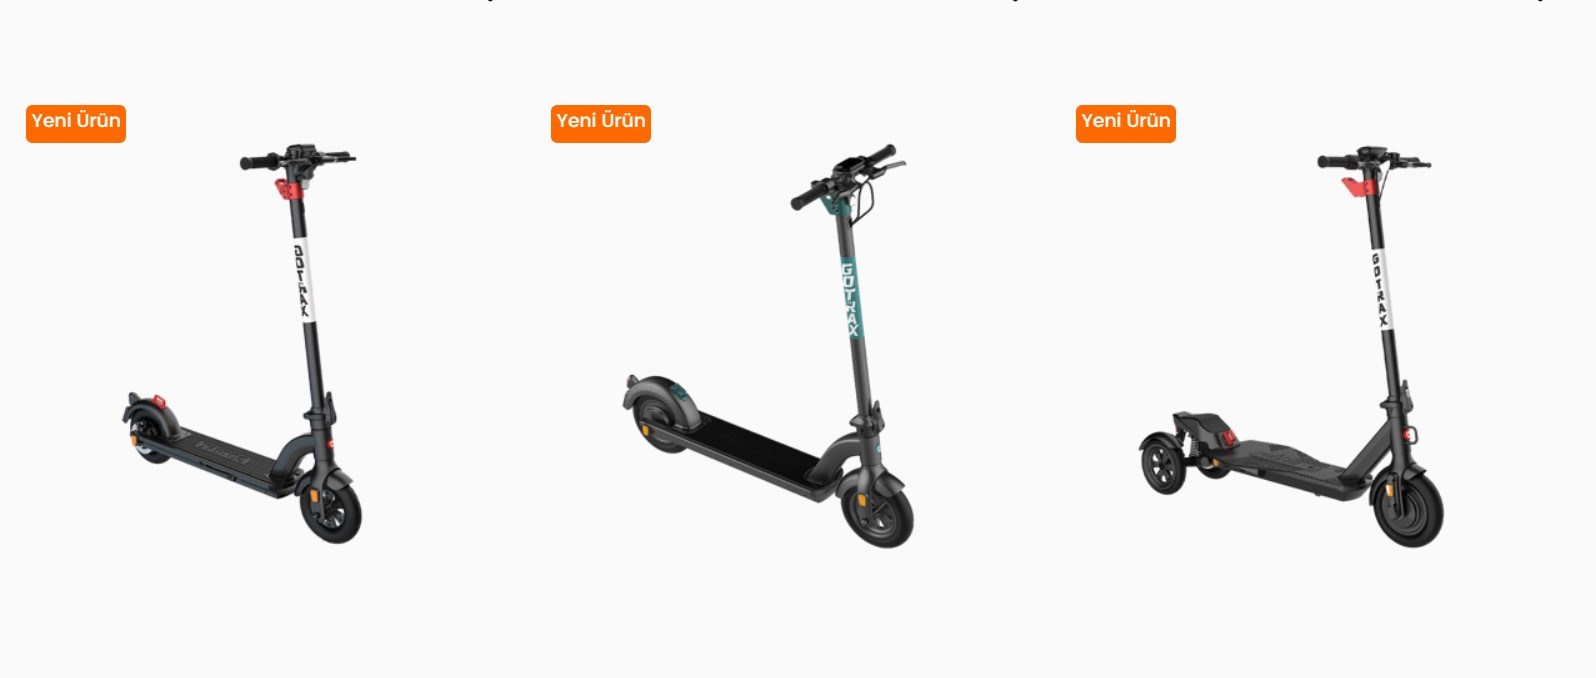 Gotrax elektrikli scooter modelleri Türkiye’de satışa çıktı